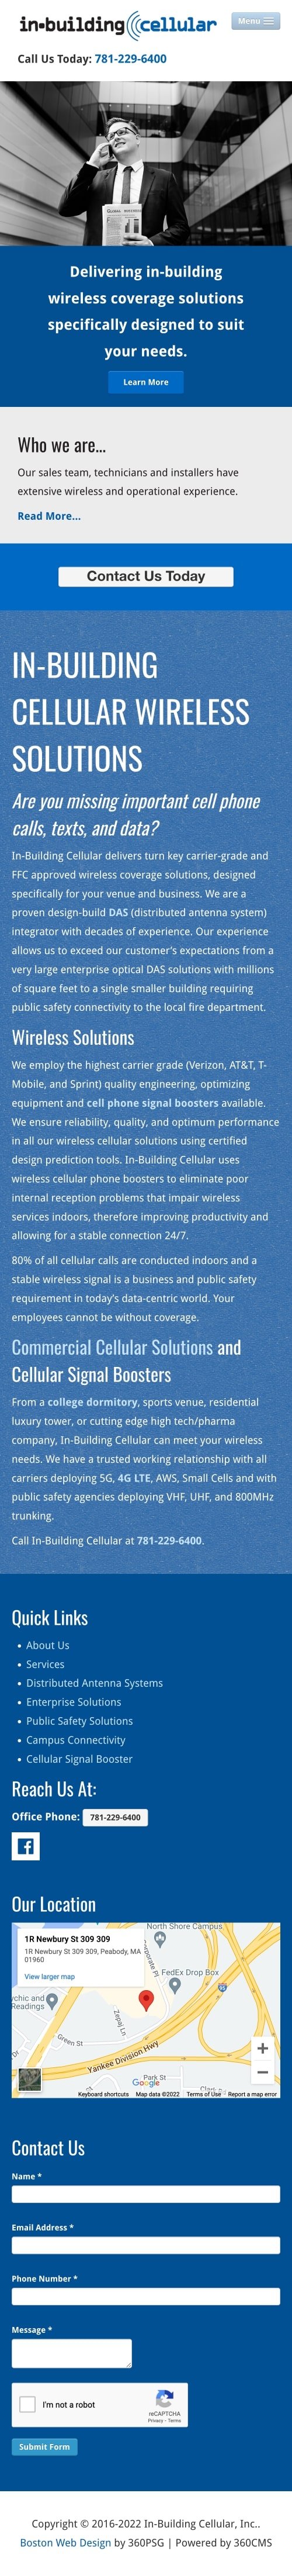 In-Building Cellular Website - Mobile